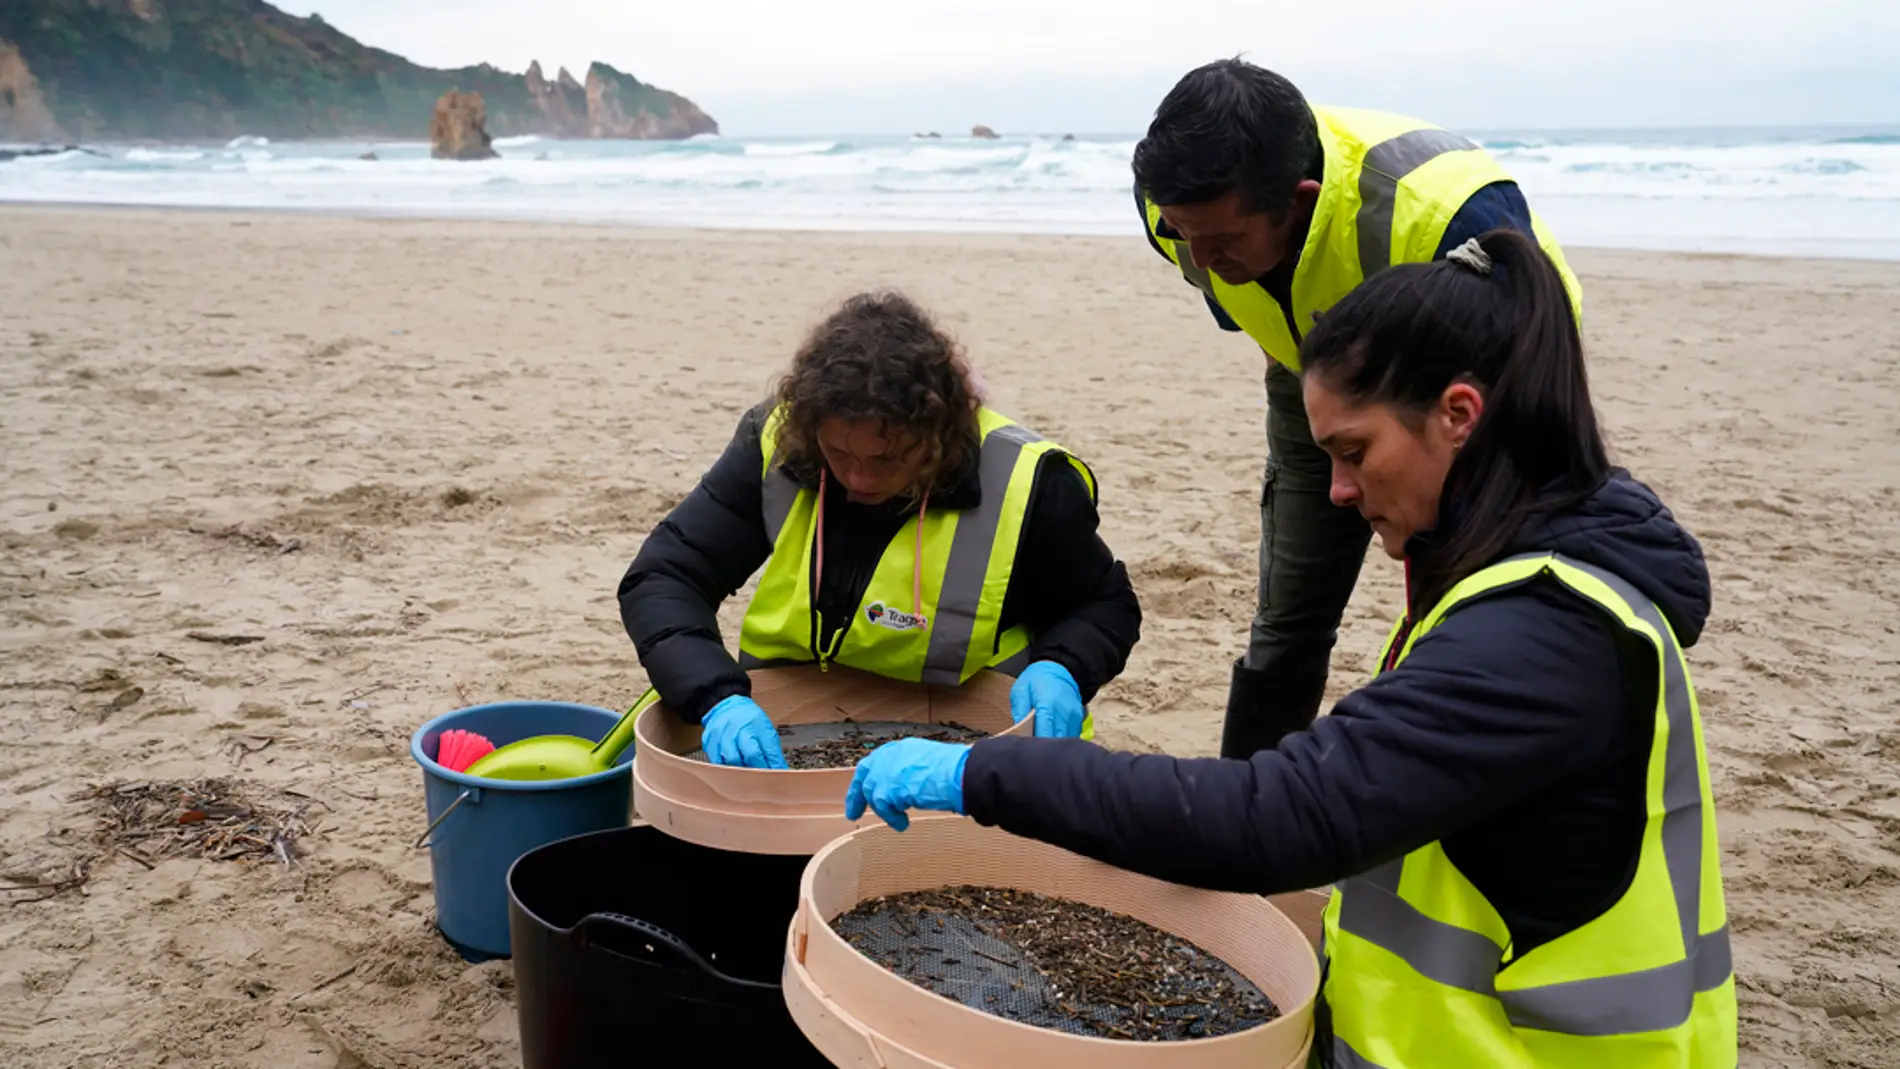 Operarios retiran los pellets o bolitas para fabricar plástico que aparecen en las playas de Asturias/ EFE/Paco Paredes